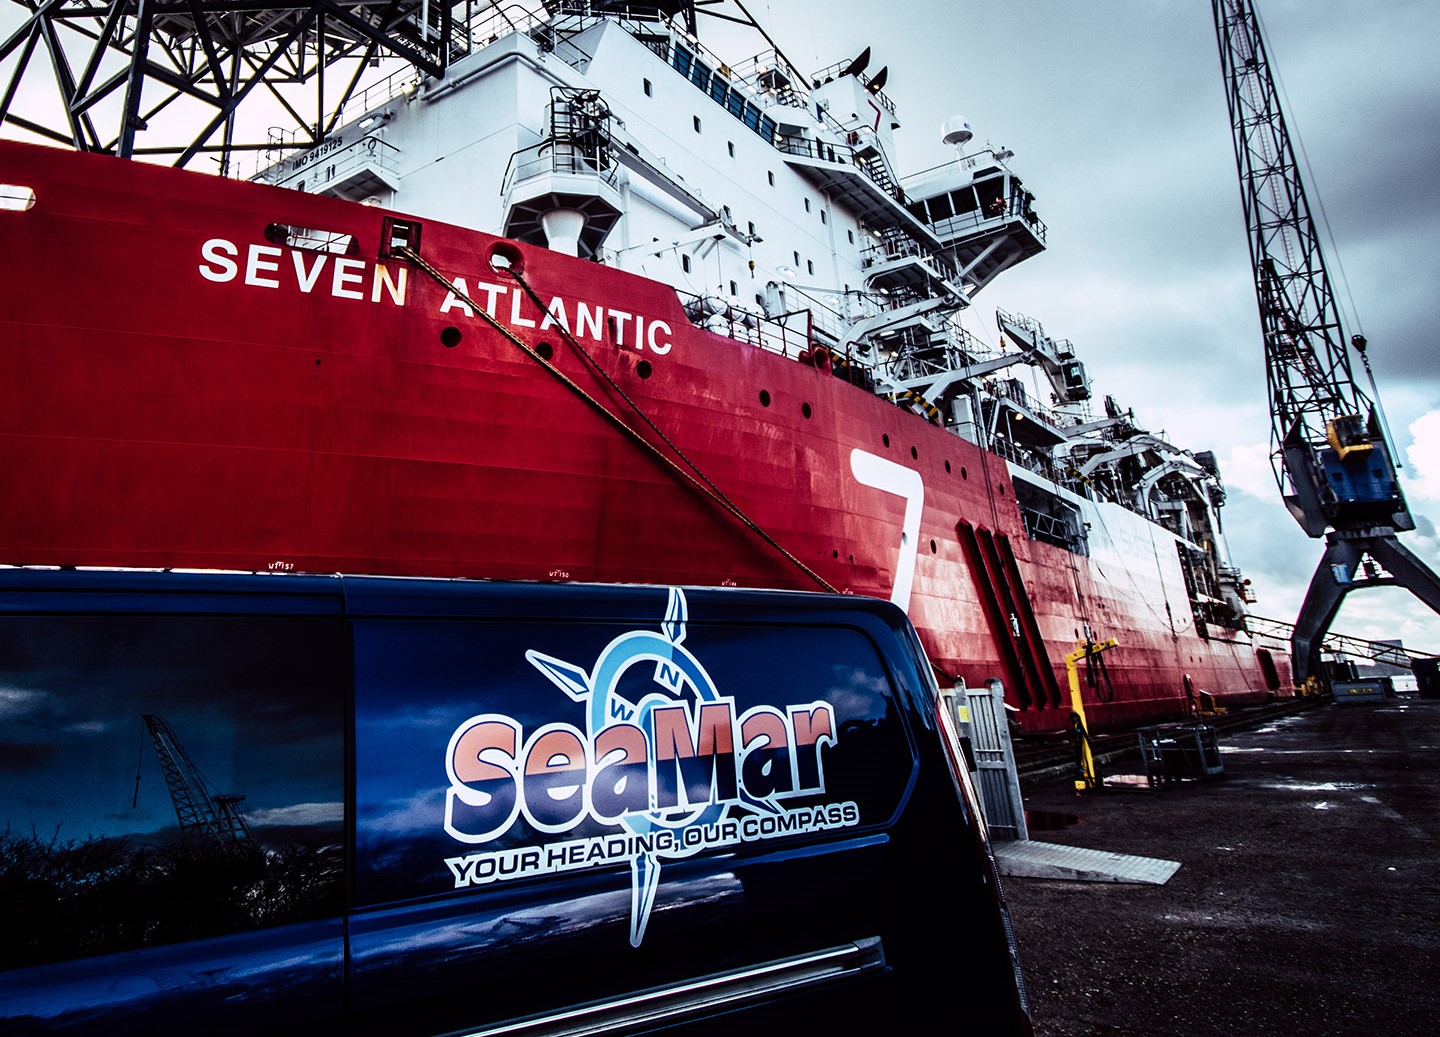 Ein SeaMar-Transporter im Hafen mit dem Schiff "Seven Atlantic" und einem Kran im Hintergrund